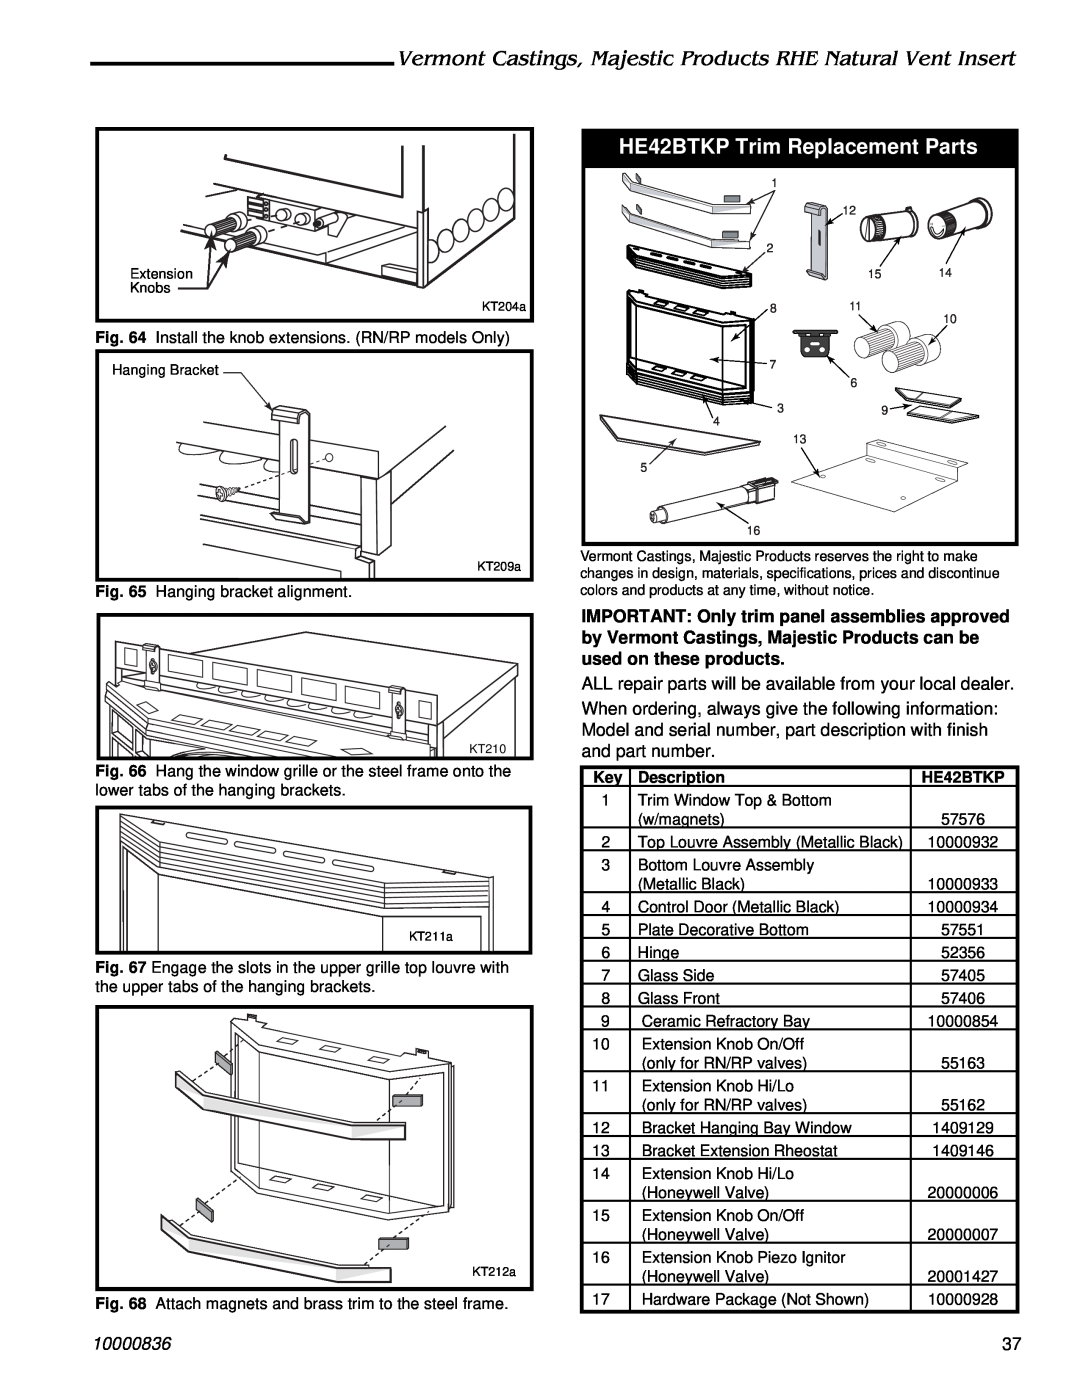 Vermont Casting RHE25, RHE42, RHE32 installation instructions HE42BTKP Trim Replacement Parts, 10000836, Description 